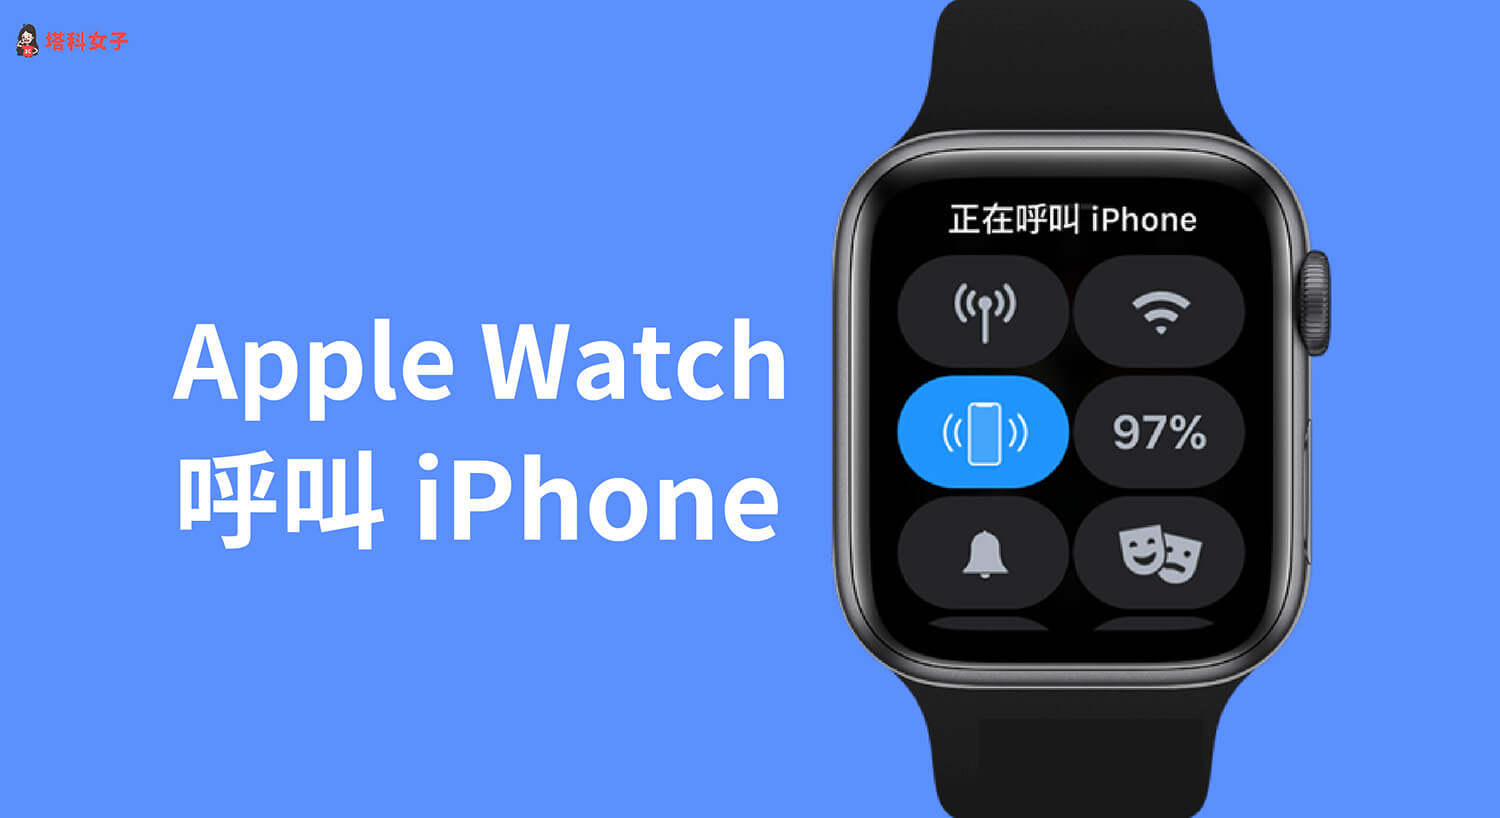 Apple Watch 如何尋找 iPhone？教你用「呼叫 iPhone」功能